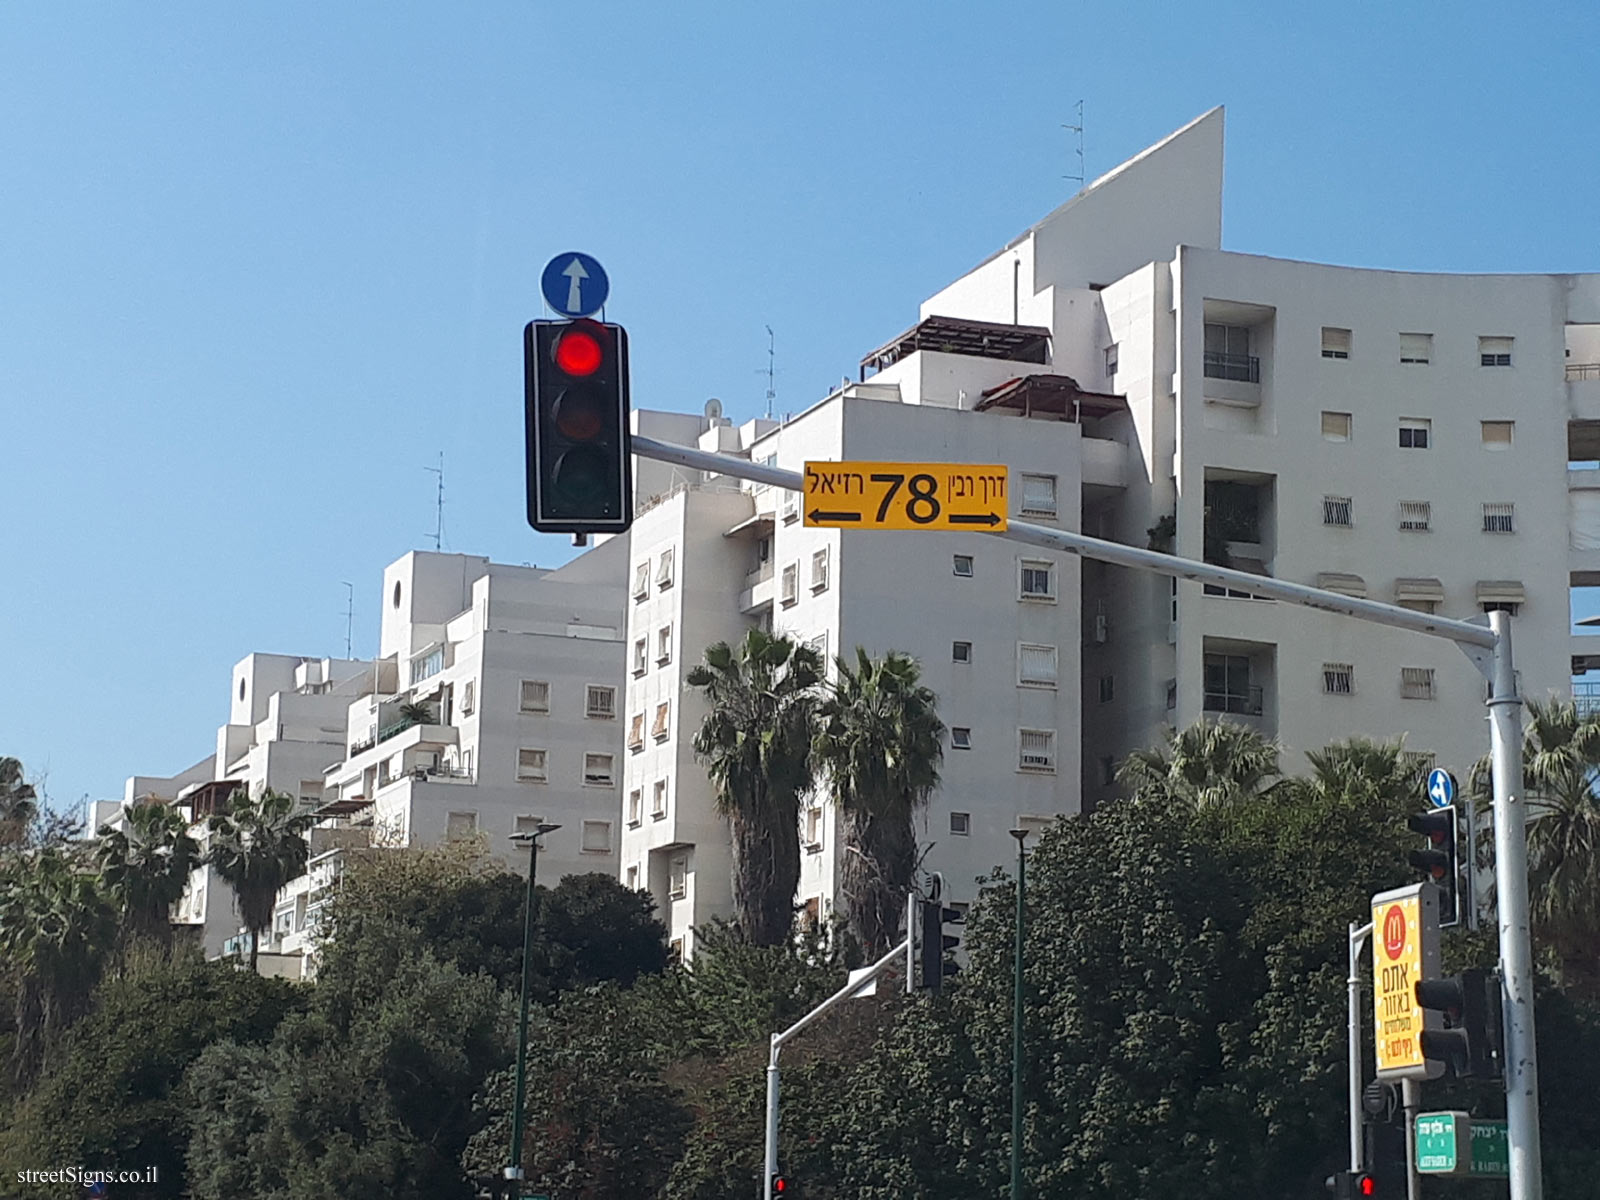 Ramat Gan - Traffic signs - Raziel Street and Rabin Road